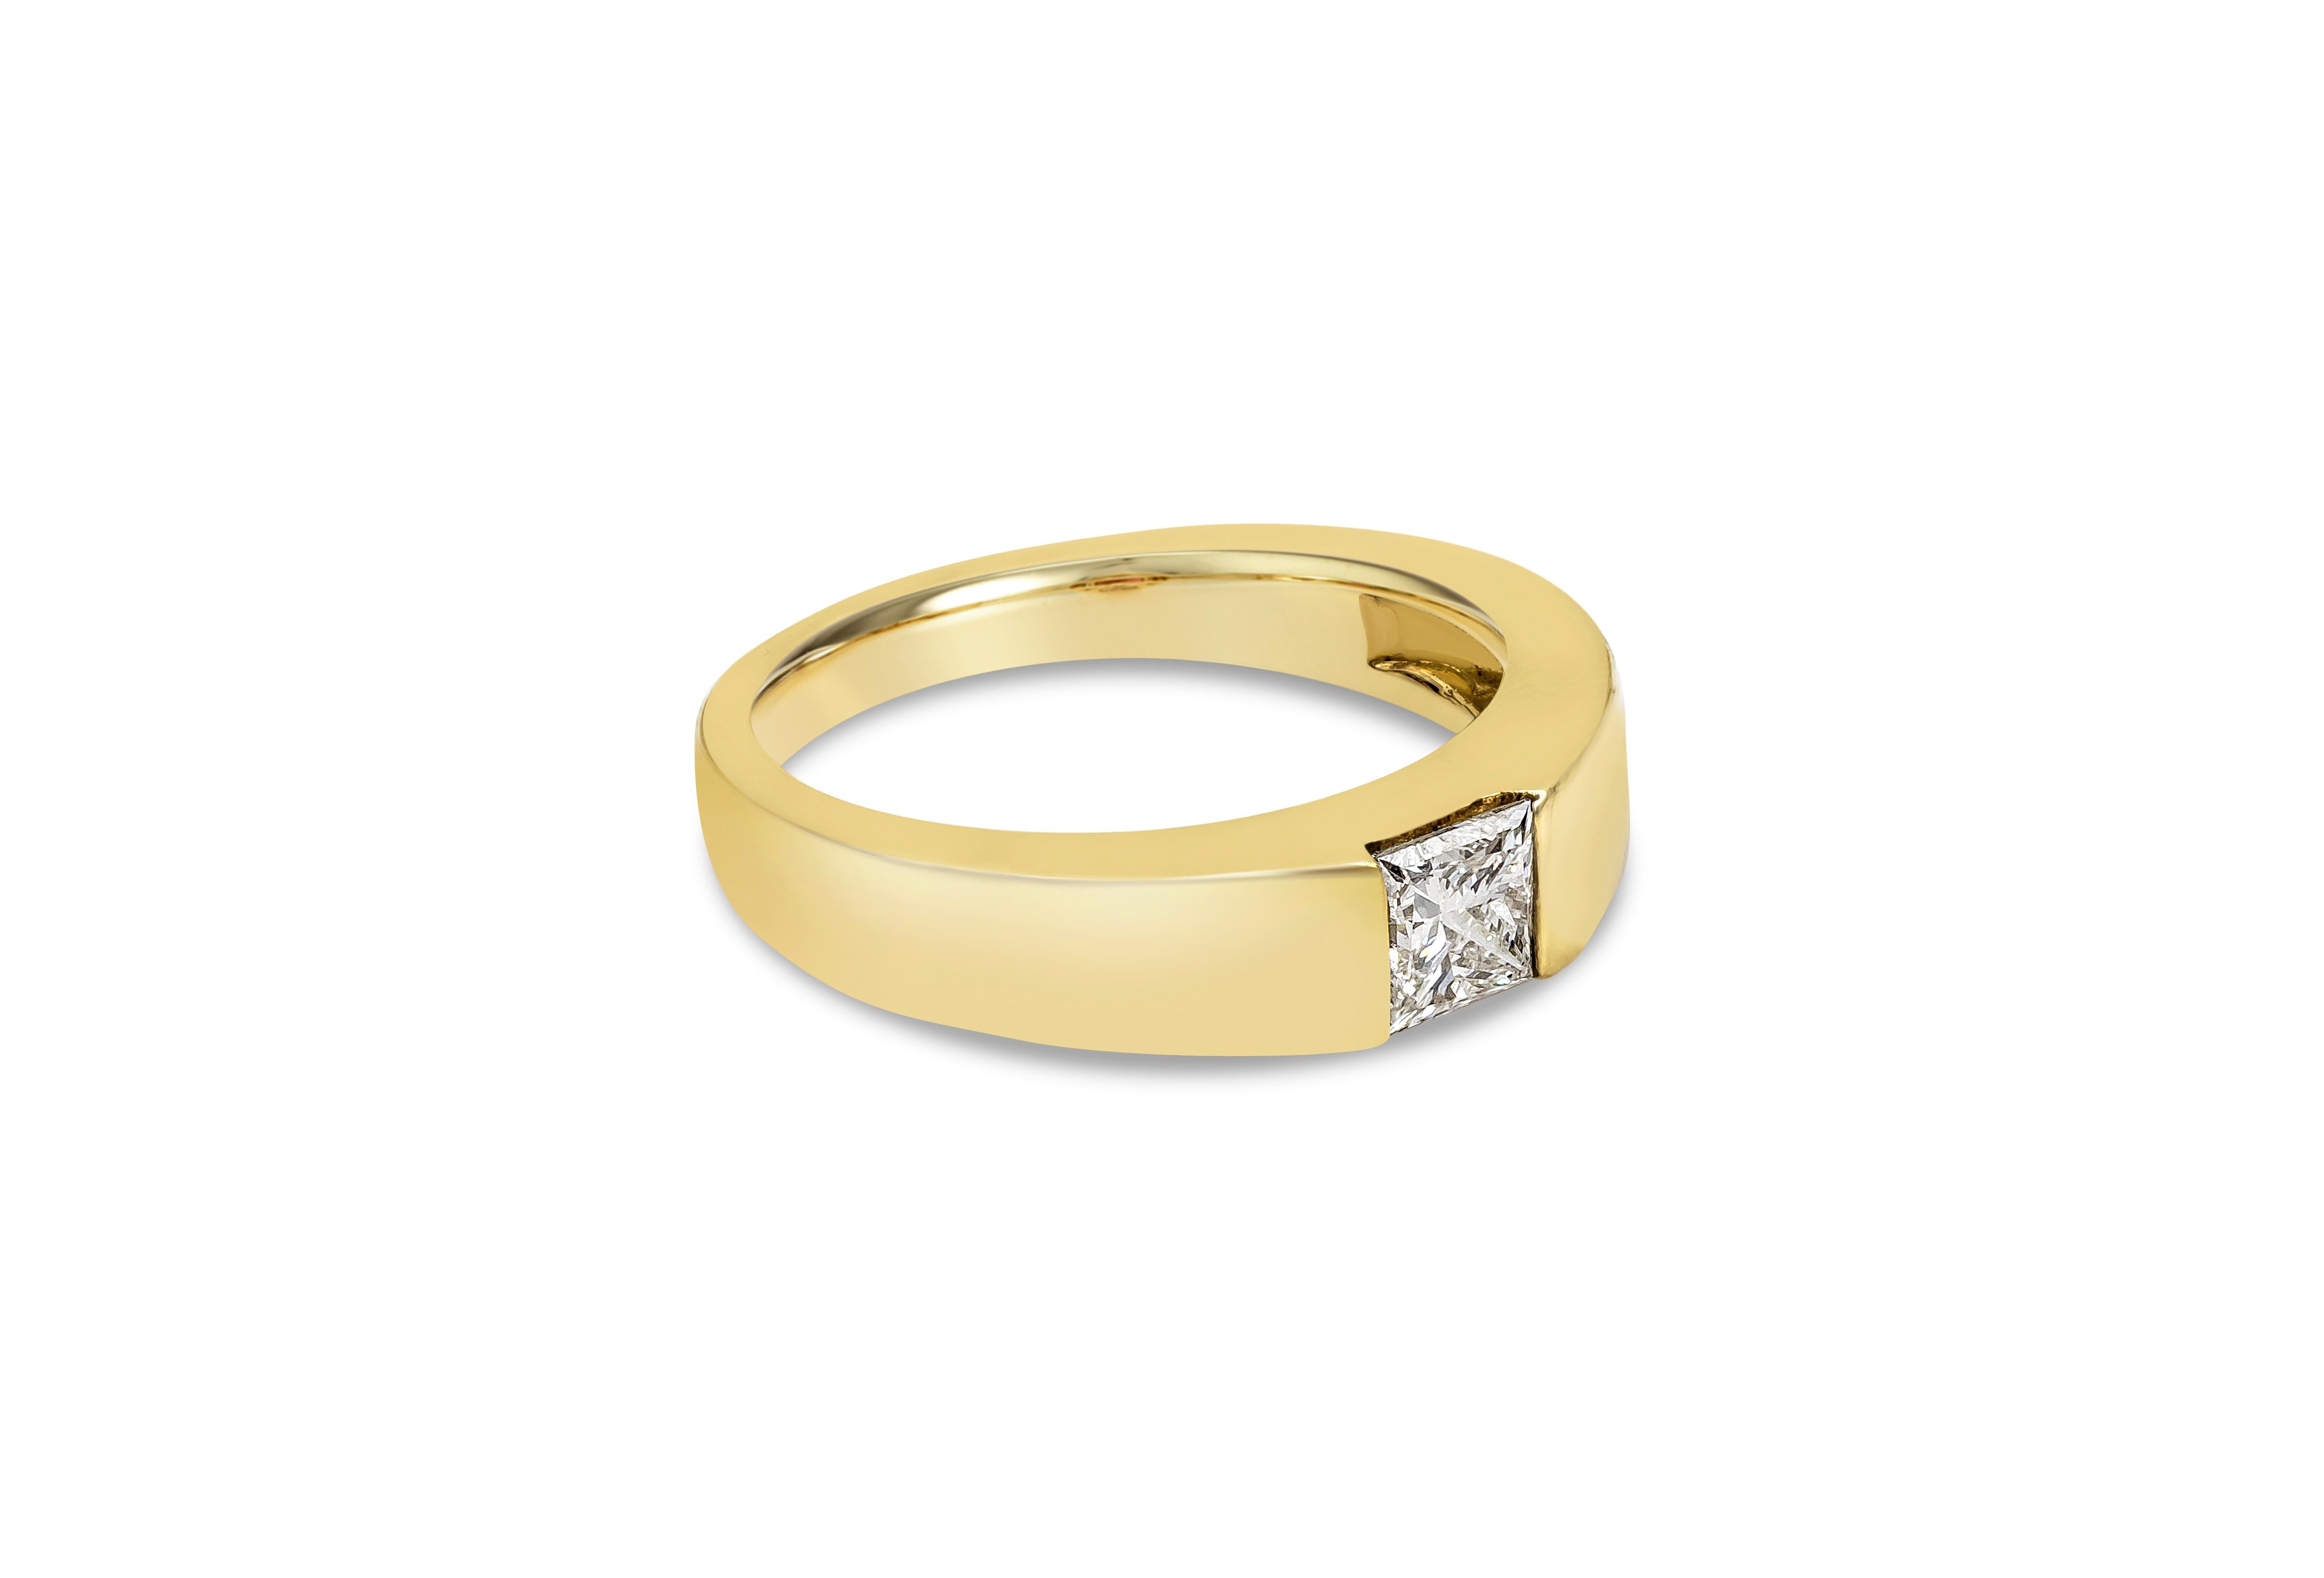 Présente un diamant de taille princesse de 0,70 carats certifié par le GIA de couleur I, pureté VS2, serti dans une monture semi-bézelle. Finement réalisé en or jaune 14 carats et de taille 8.25 US redimensionnable sur demande.

Roman Malakov est